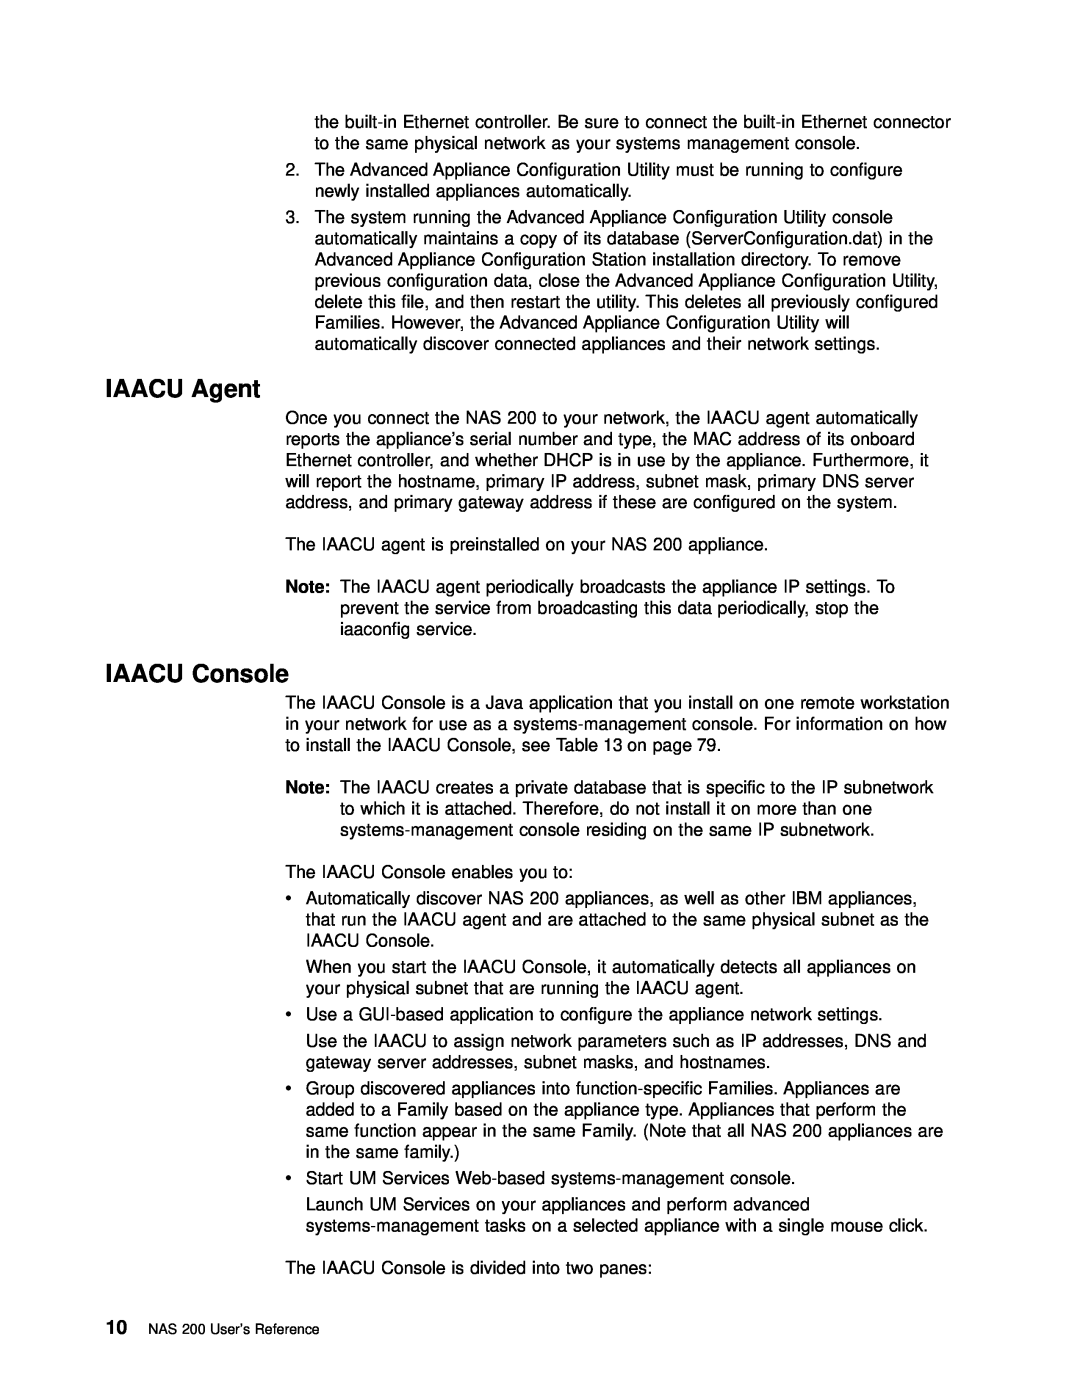 IBM 201 manual IAACU Agent, IAACU Console 